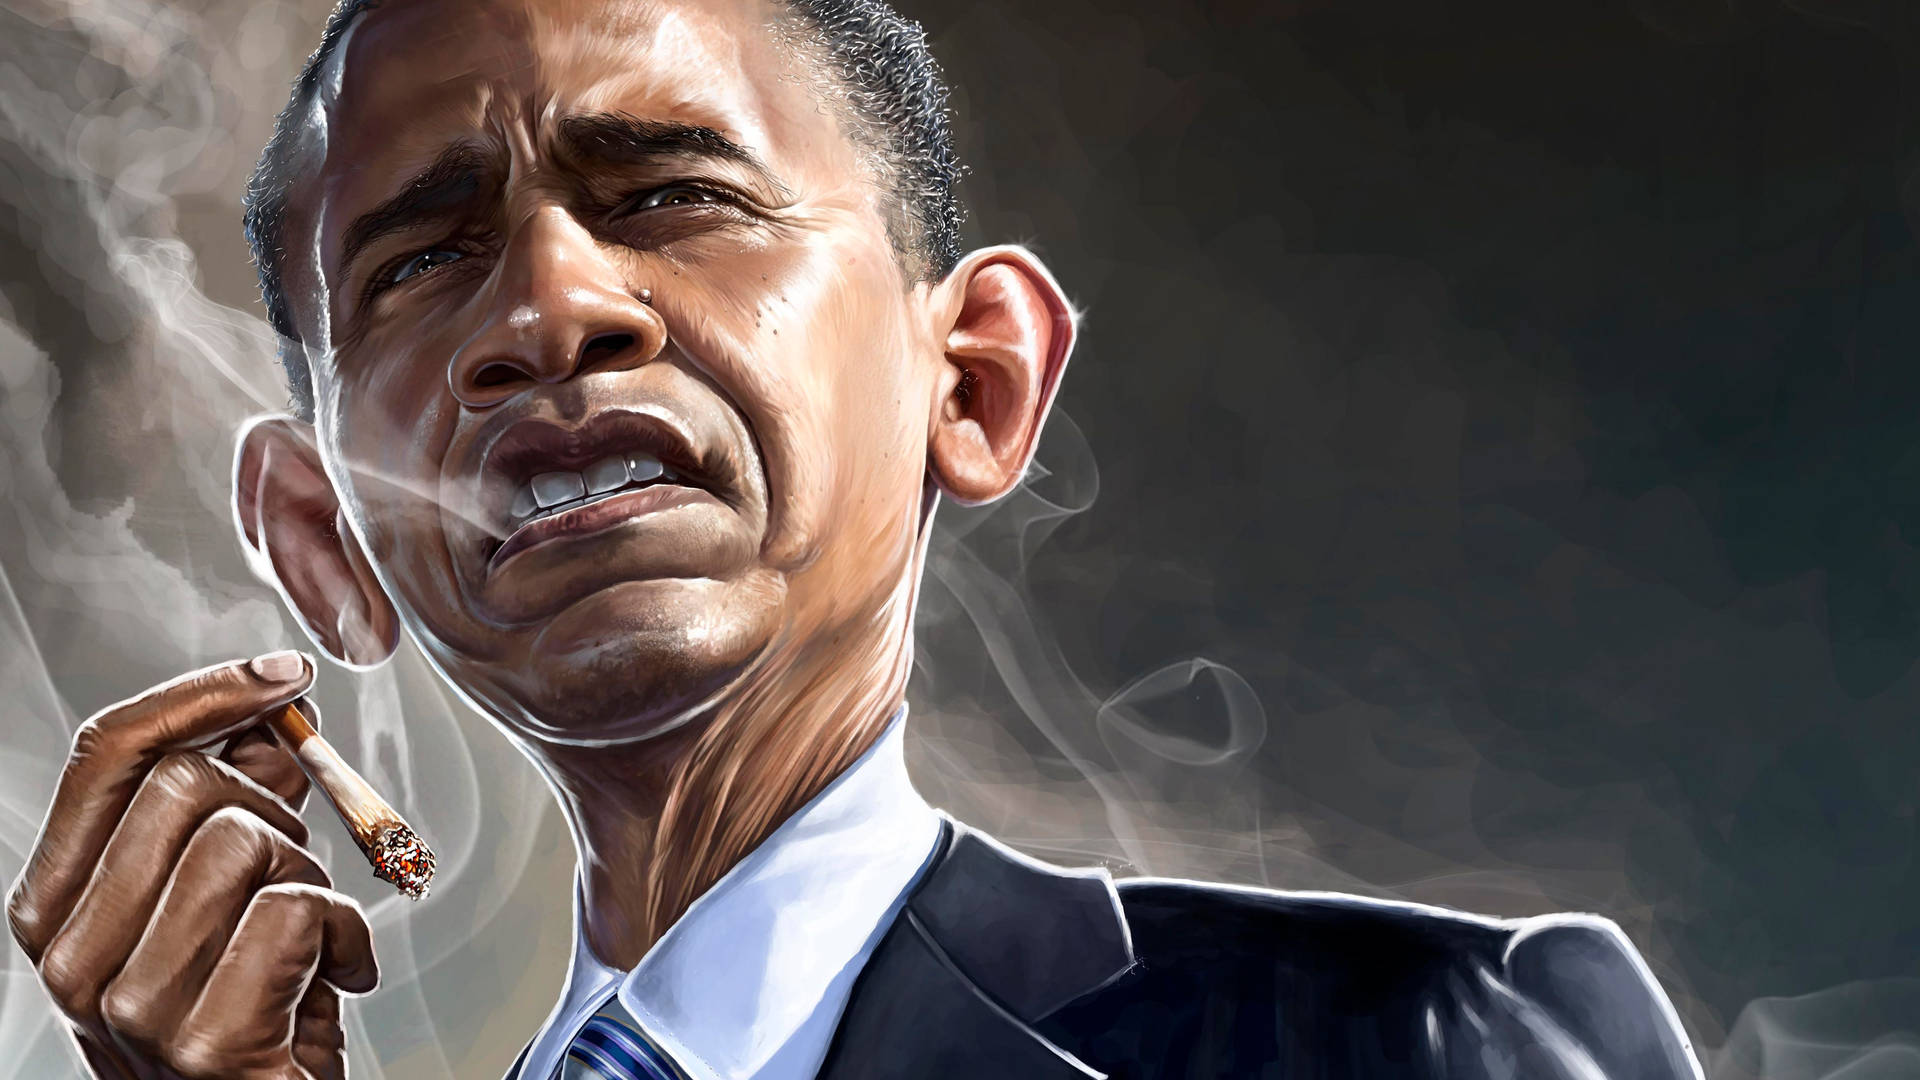 Barack Obama Caricature Illustration Background